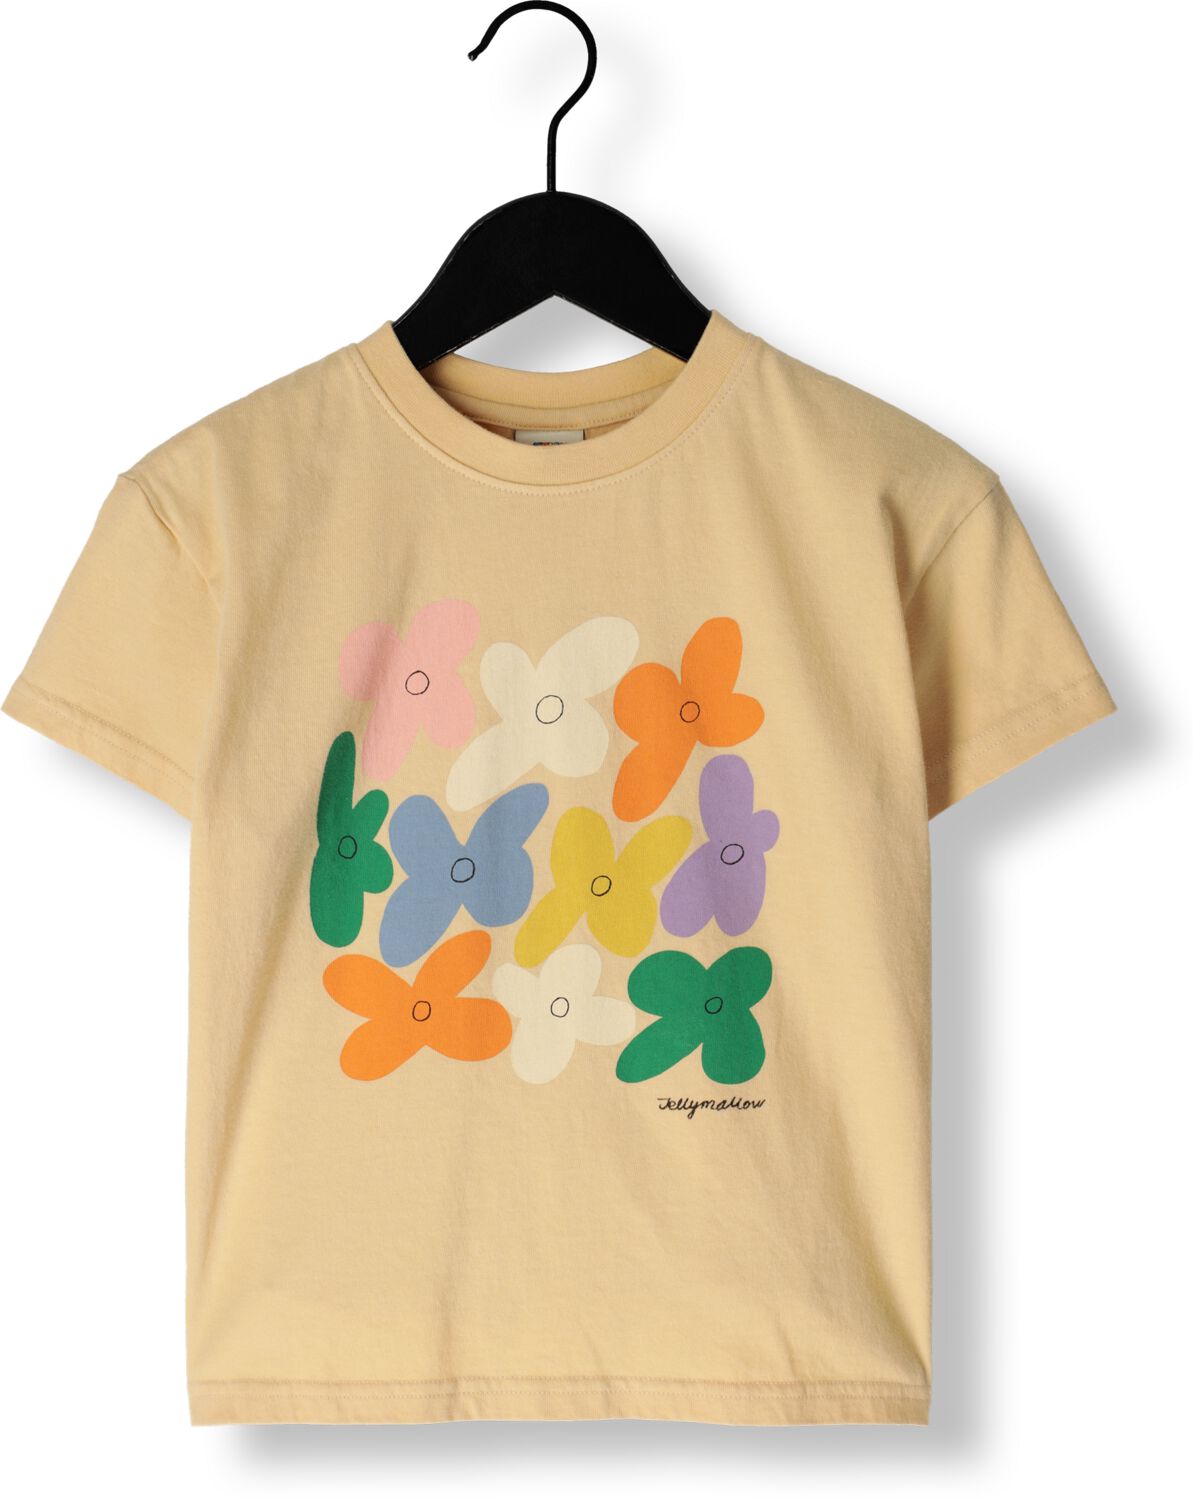 Jelly Mallow Meisjes Tops & T-shirts Flower T-shirt Geel-9Y